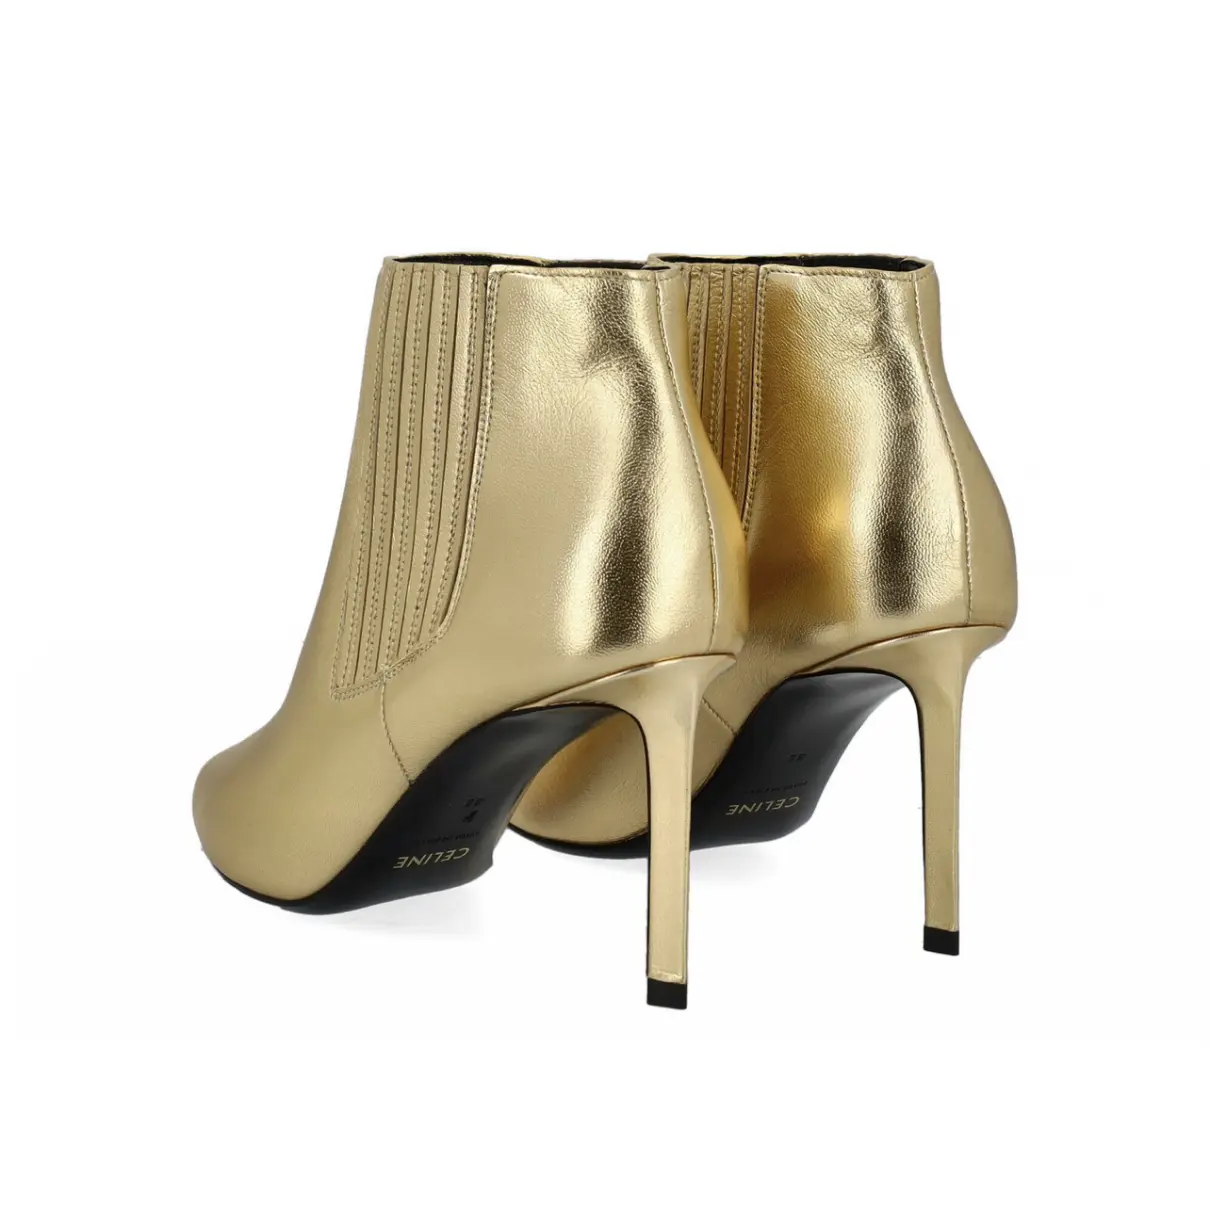 Luxury Celine Ankle boots Women